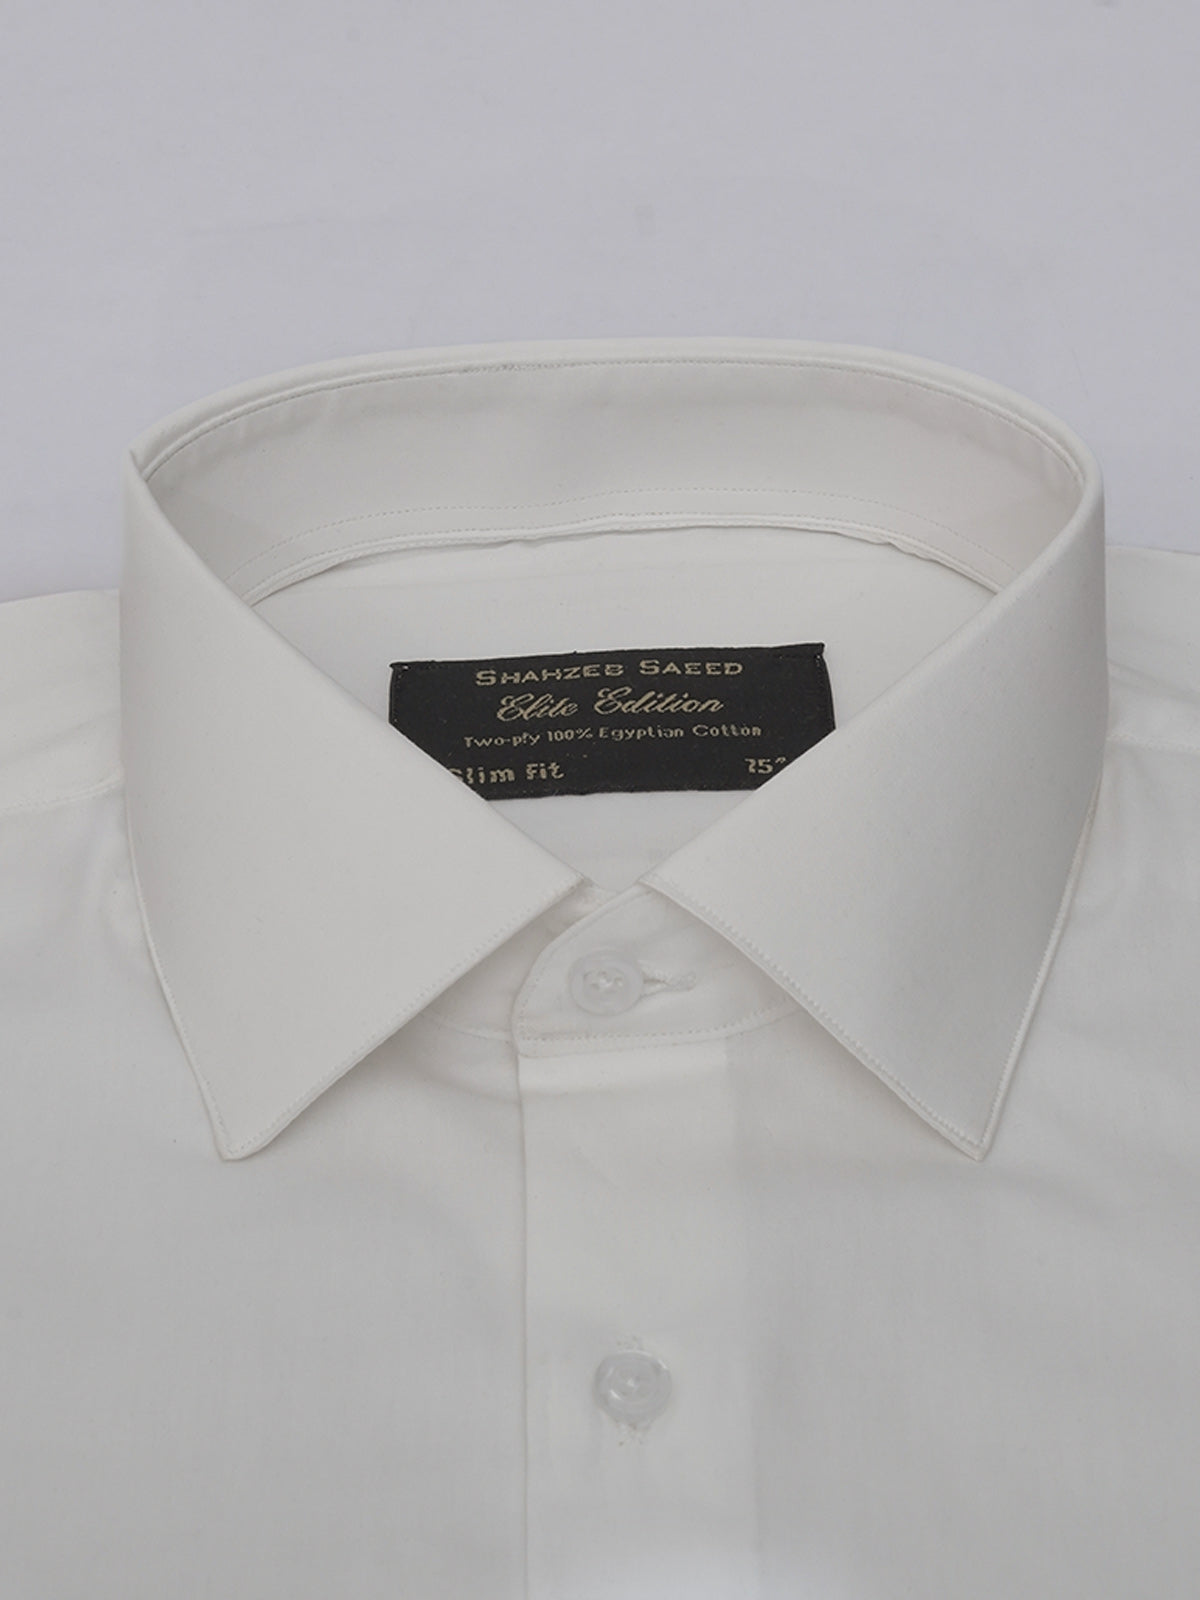 White Plain, Elite Edition, French Collar Men’s Formal Shirt (FS-536)